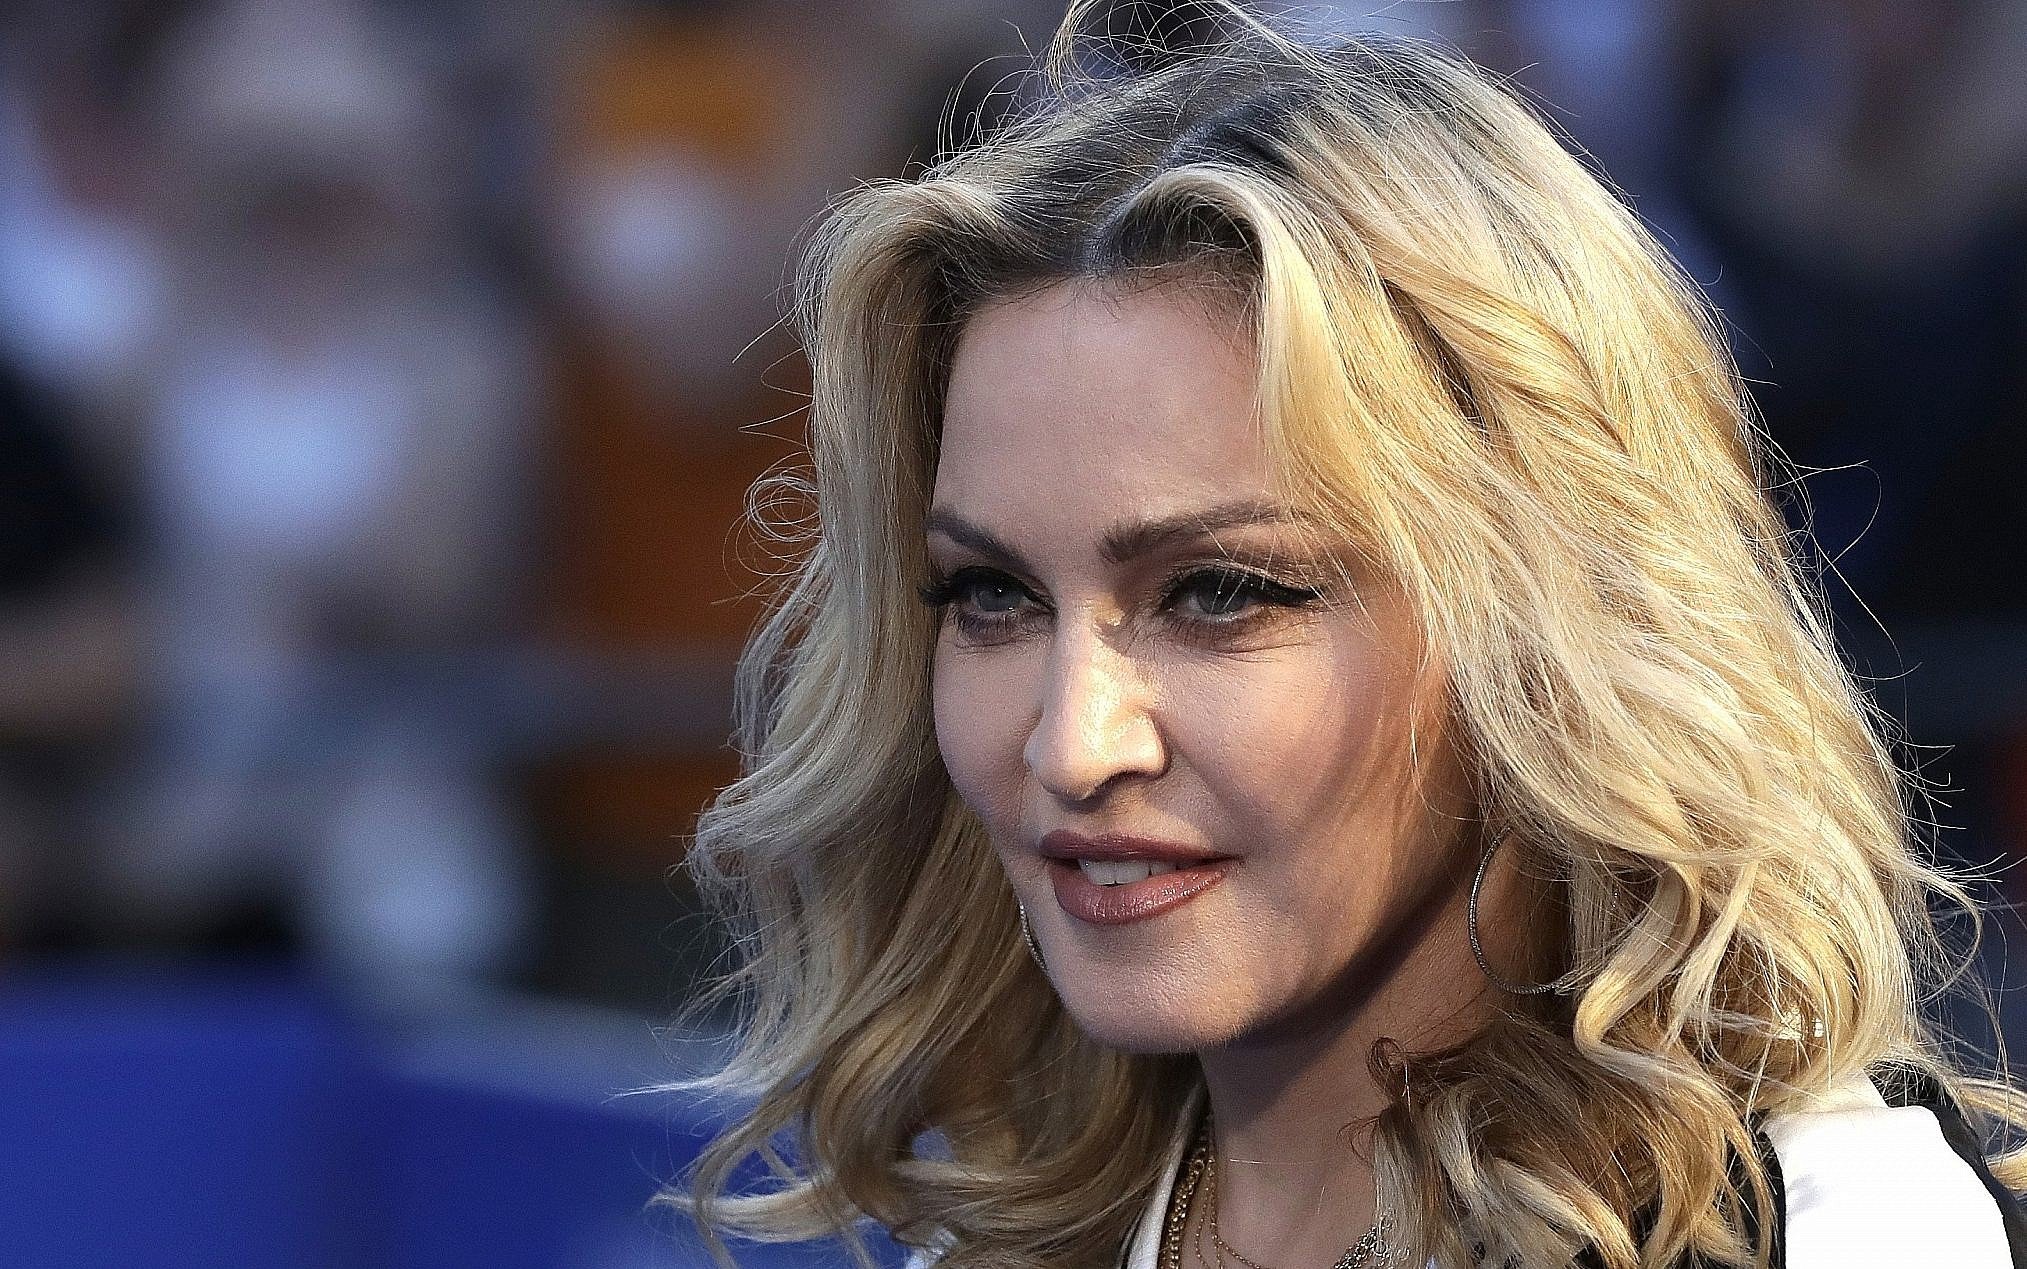  Madonna a dezvăluit că a fost amendată cu 1 milion de dolari pentru susţinerea drepturilor LGBTQ+